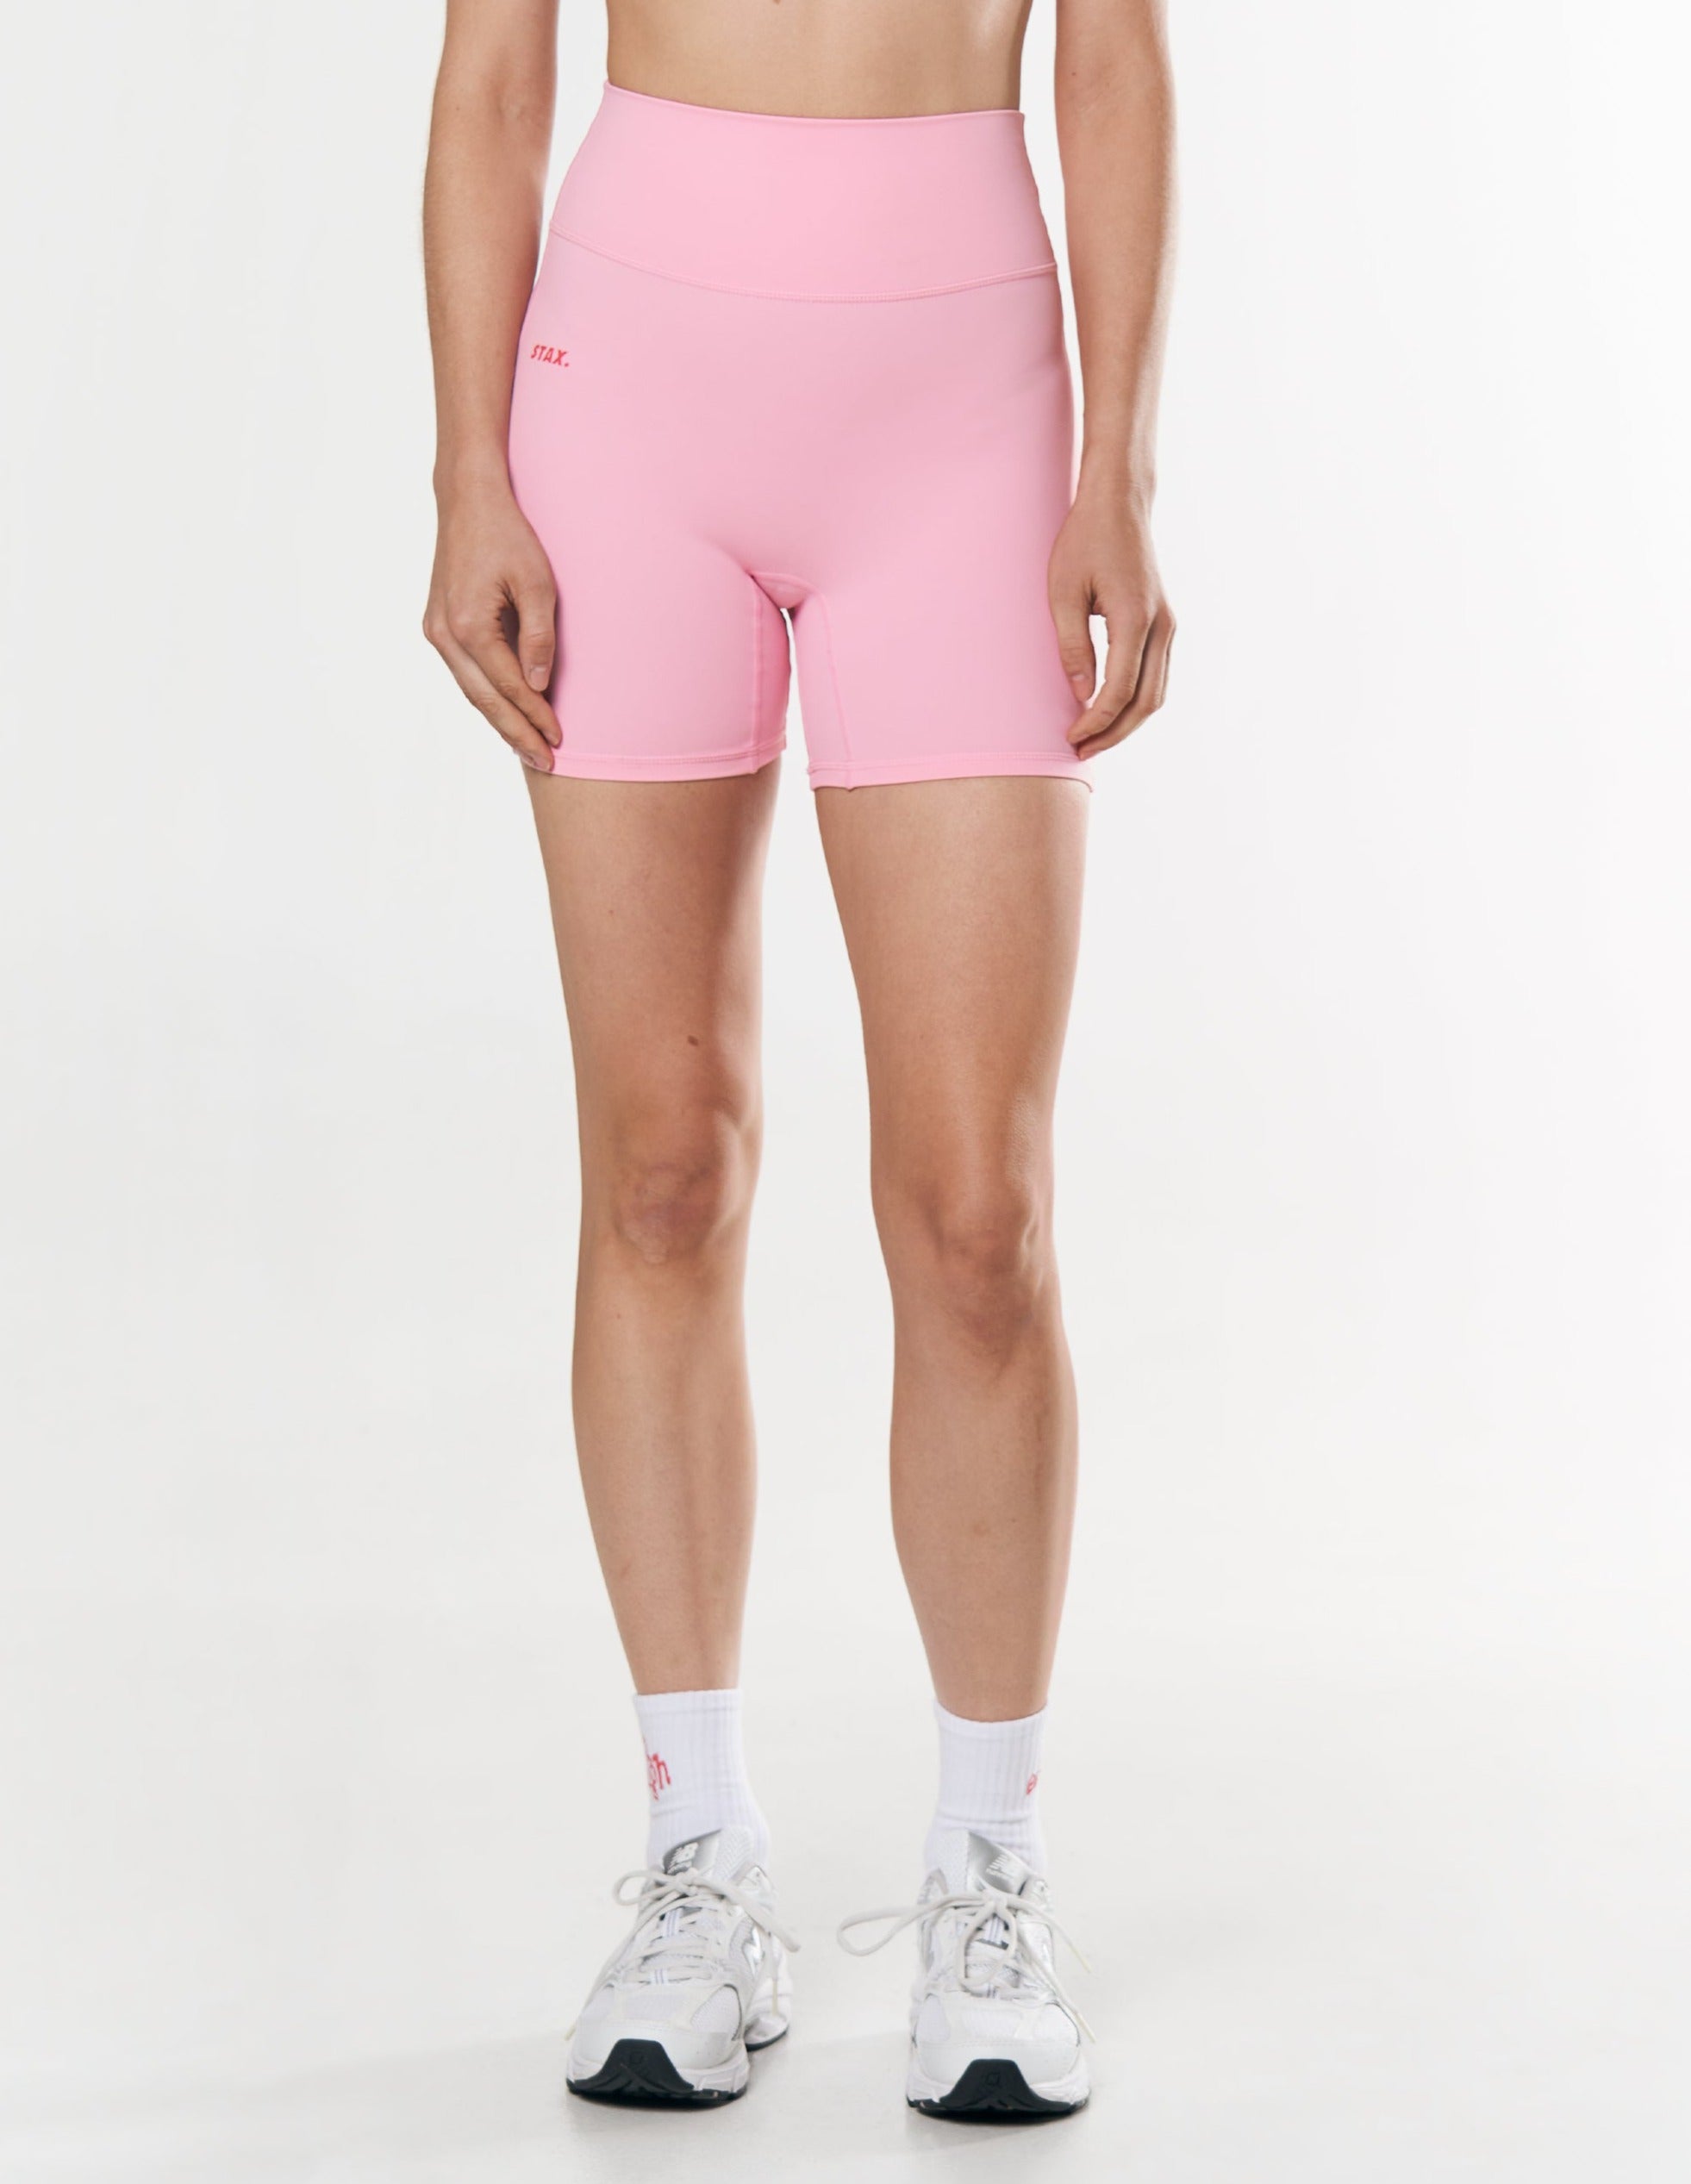 kic-midi-bike-shorts-light-pink